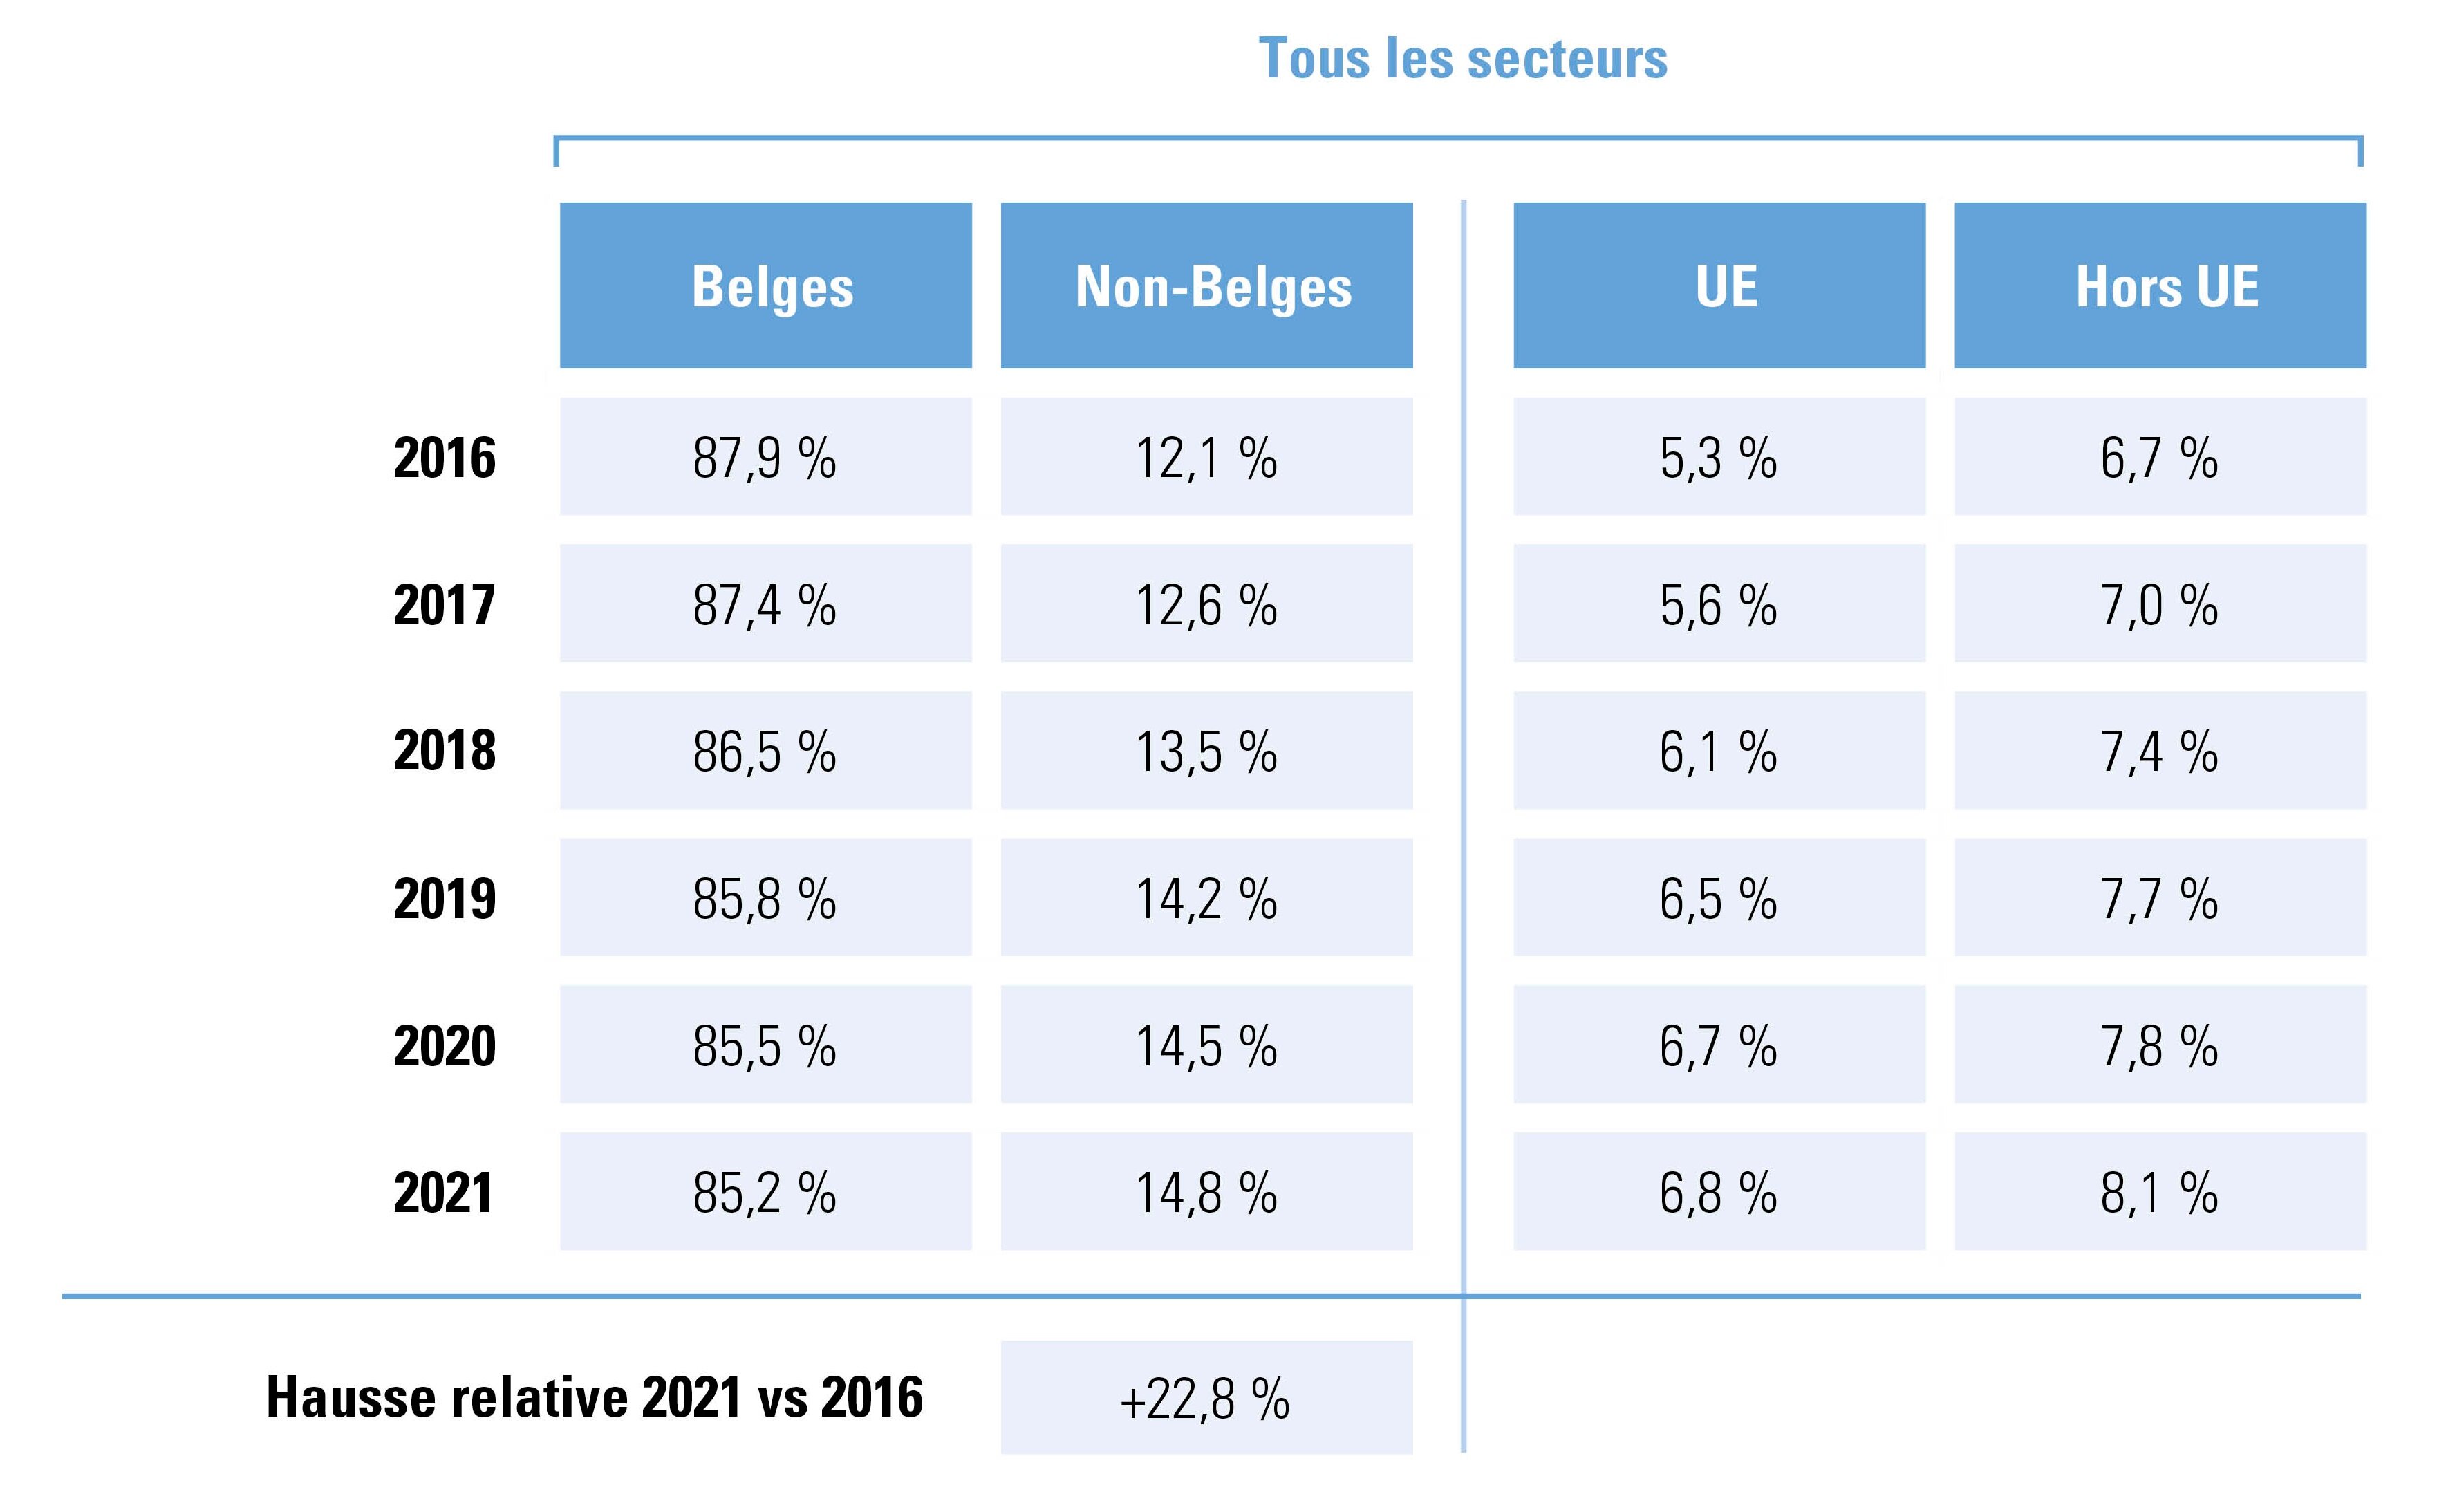 travailleurs, rapport Belges/non-Belges et UE/hors UE, du 31 décembre 2016 à 2021